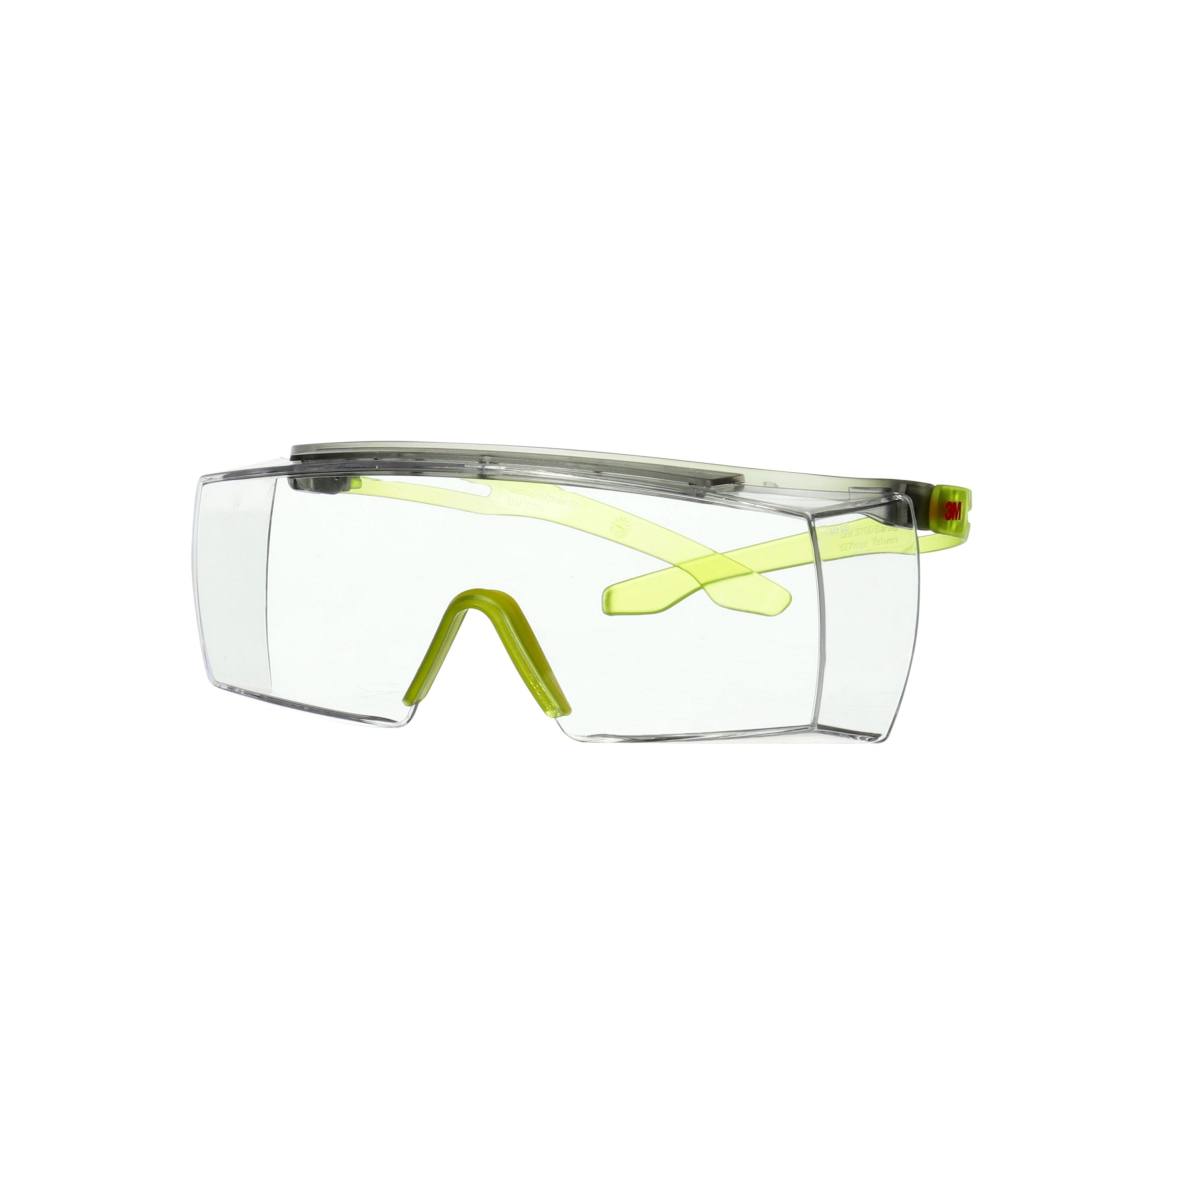 3M SecureFit 3700 sur-lunettes, branches vert citron, revêtement antibuée Scotchgard (K&amp;N), écran transparent, angle réglable, SF3701SGAF-GRN-EU